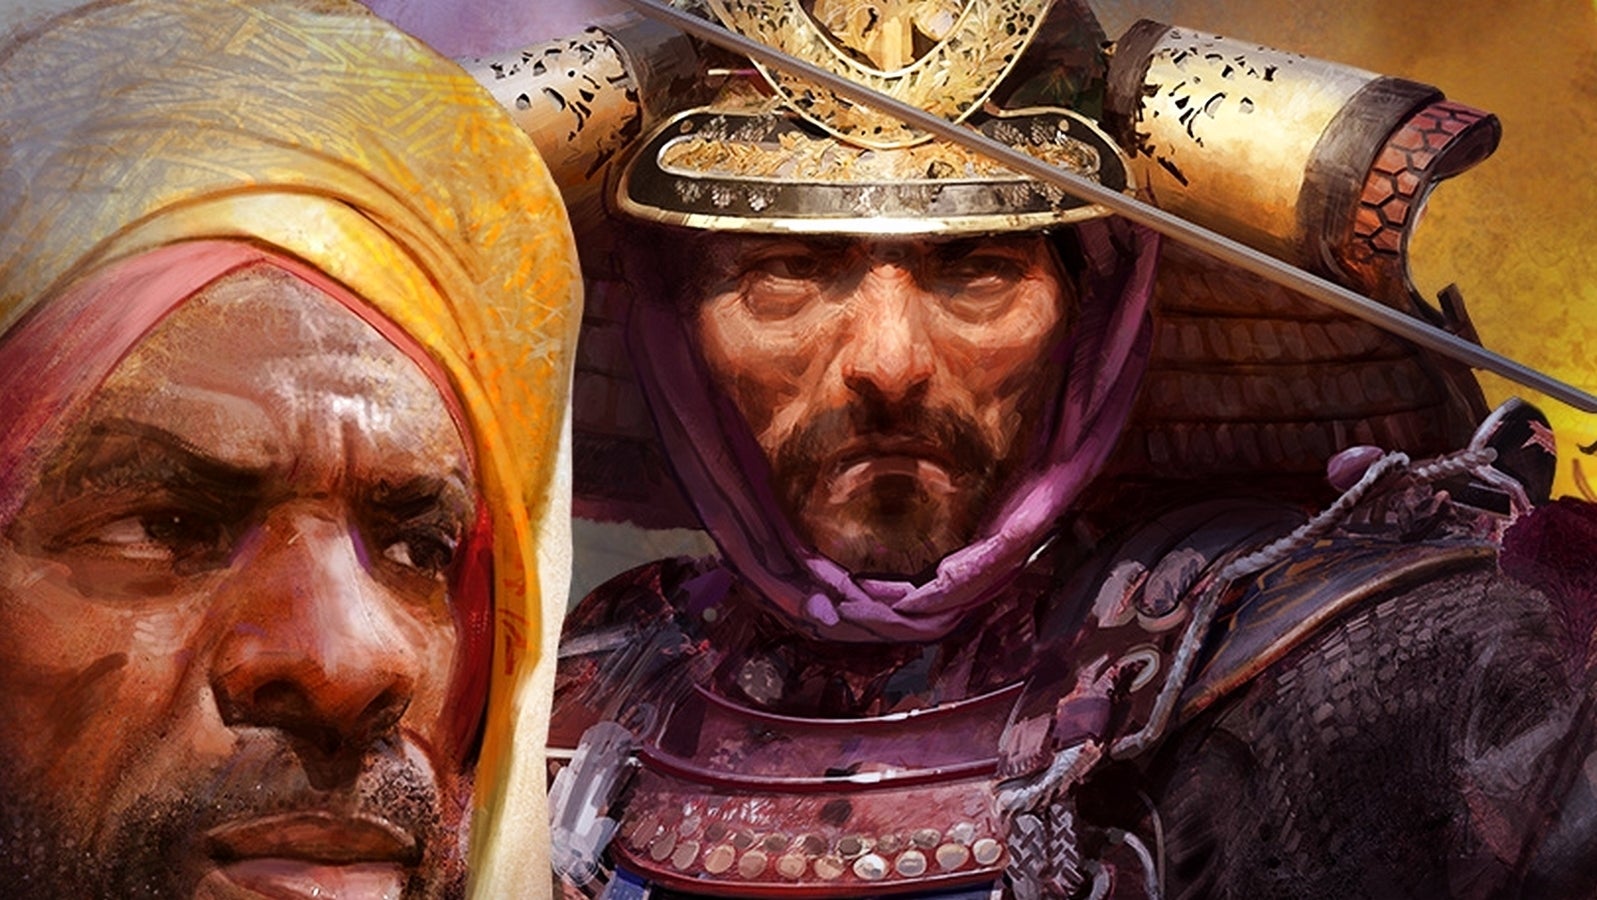 Bilder zu Seht heute mehr von Age of Empires 4 beim Fan Preview - ab 18 Uhr im Stream